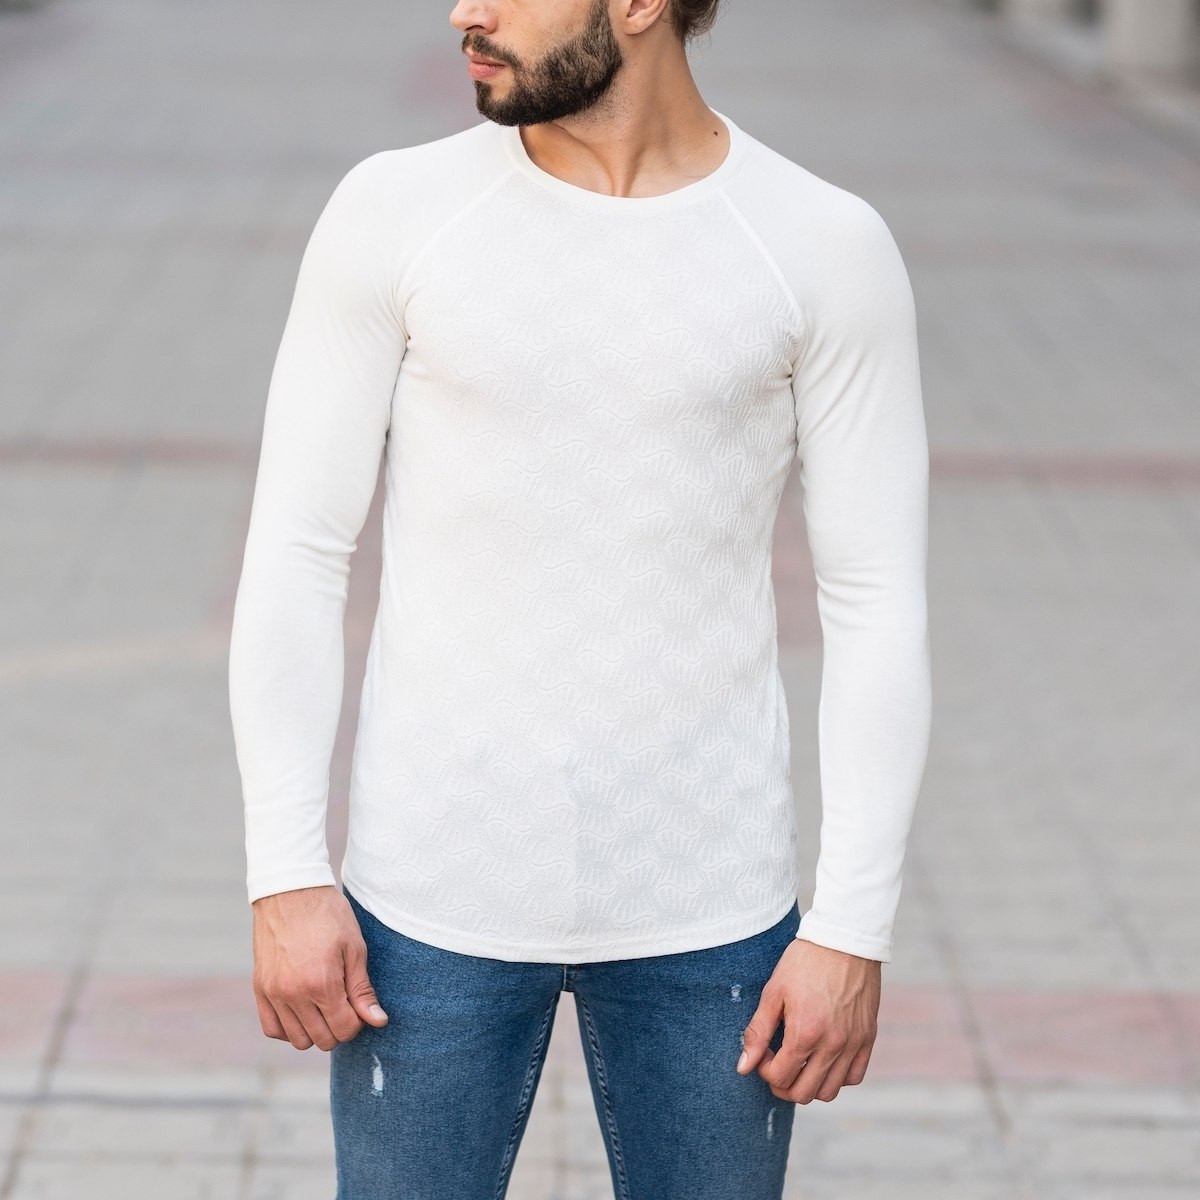 Herren Sweatshirt mit Gravur Optik in weiß - 1